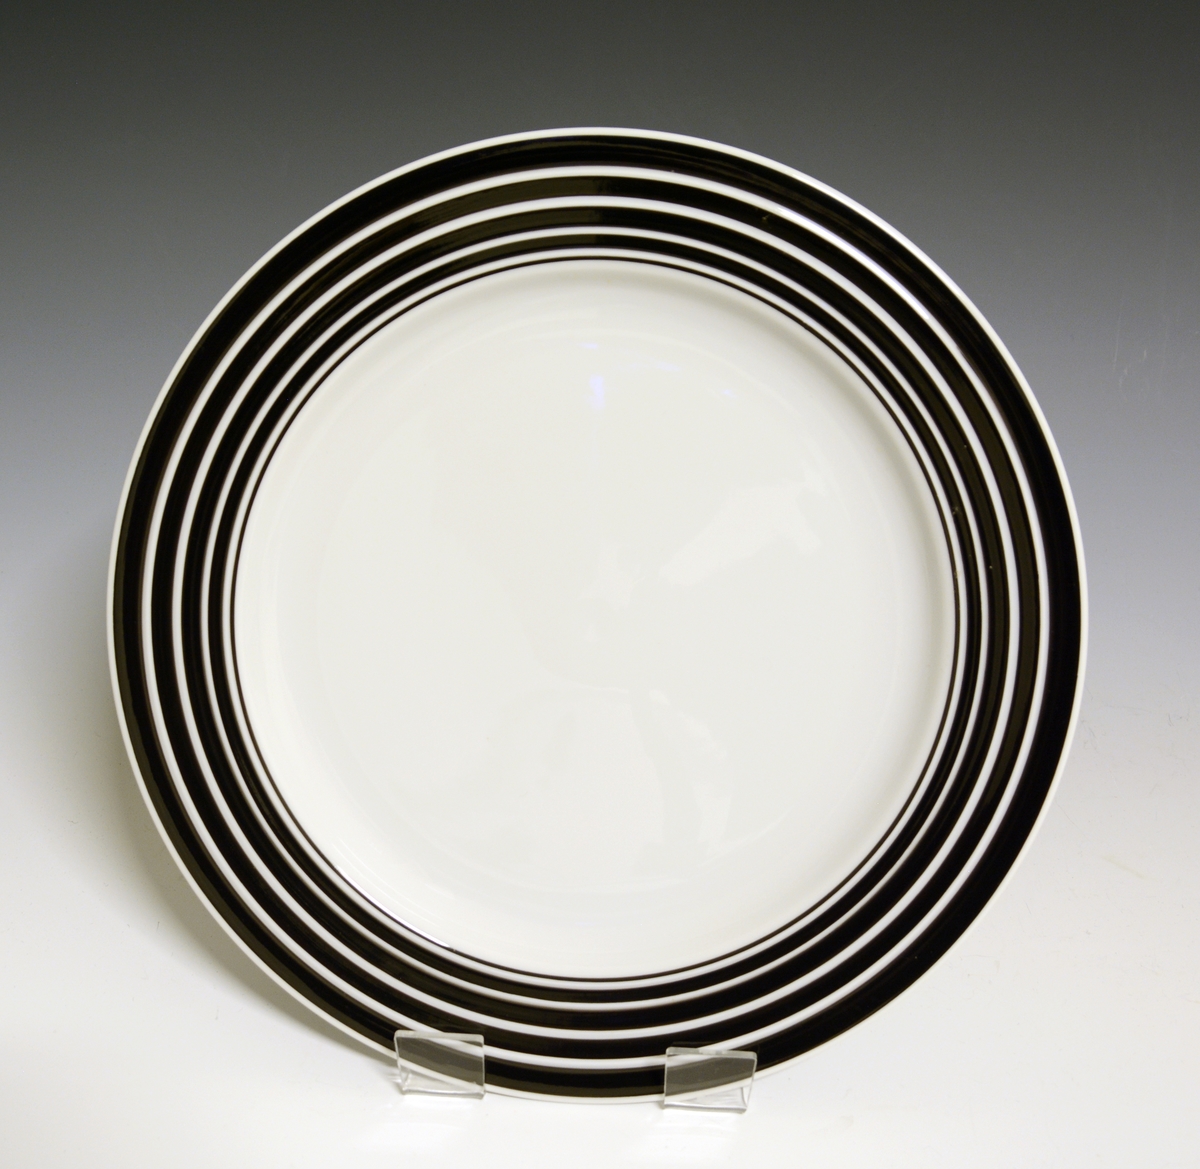 Middagstallerken av porselen med hvit glasur. Fanen dekorert med med sorte striper som øker i bredde mot fanens ytterkant. I fanens gods riller. 
Modell: Saturn